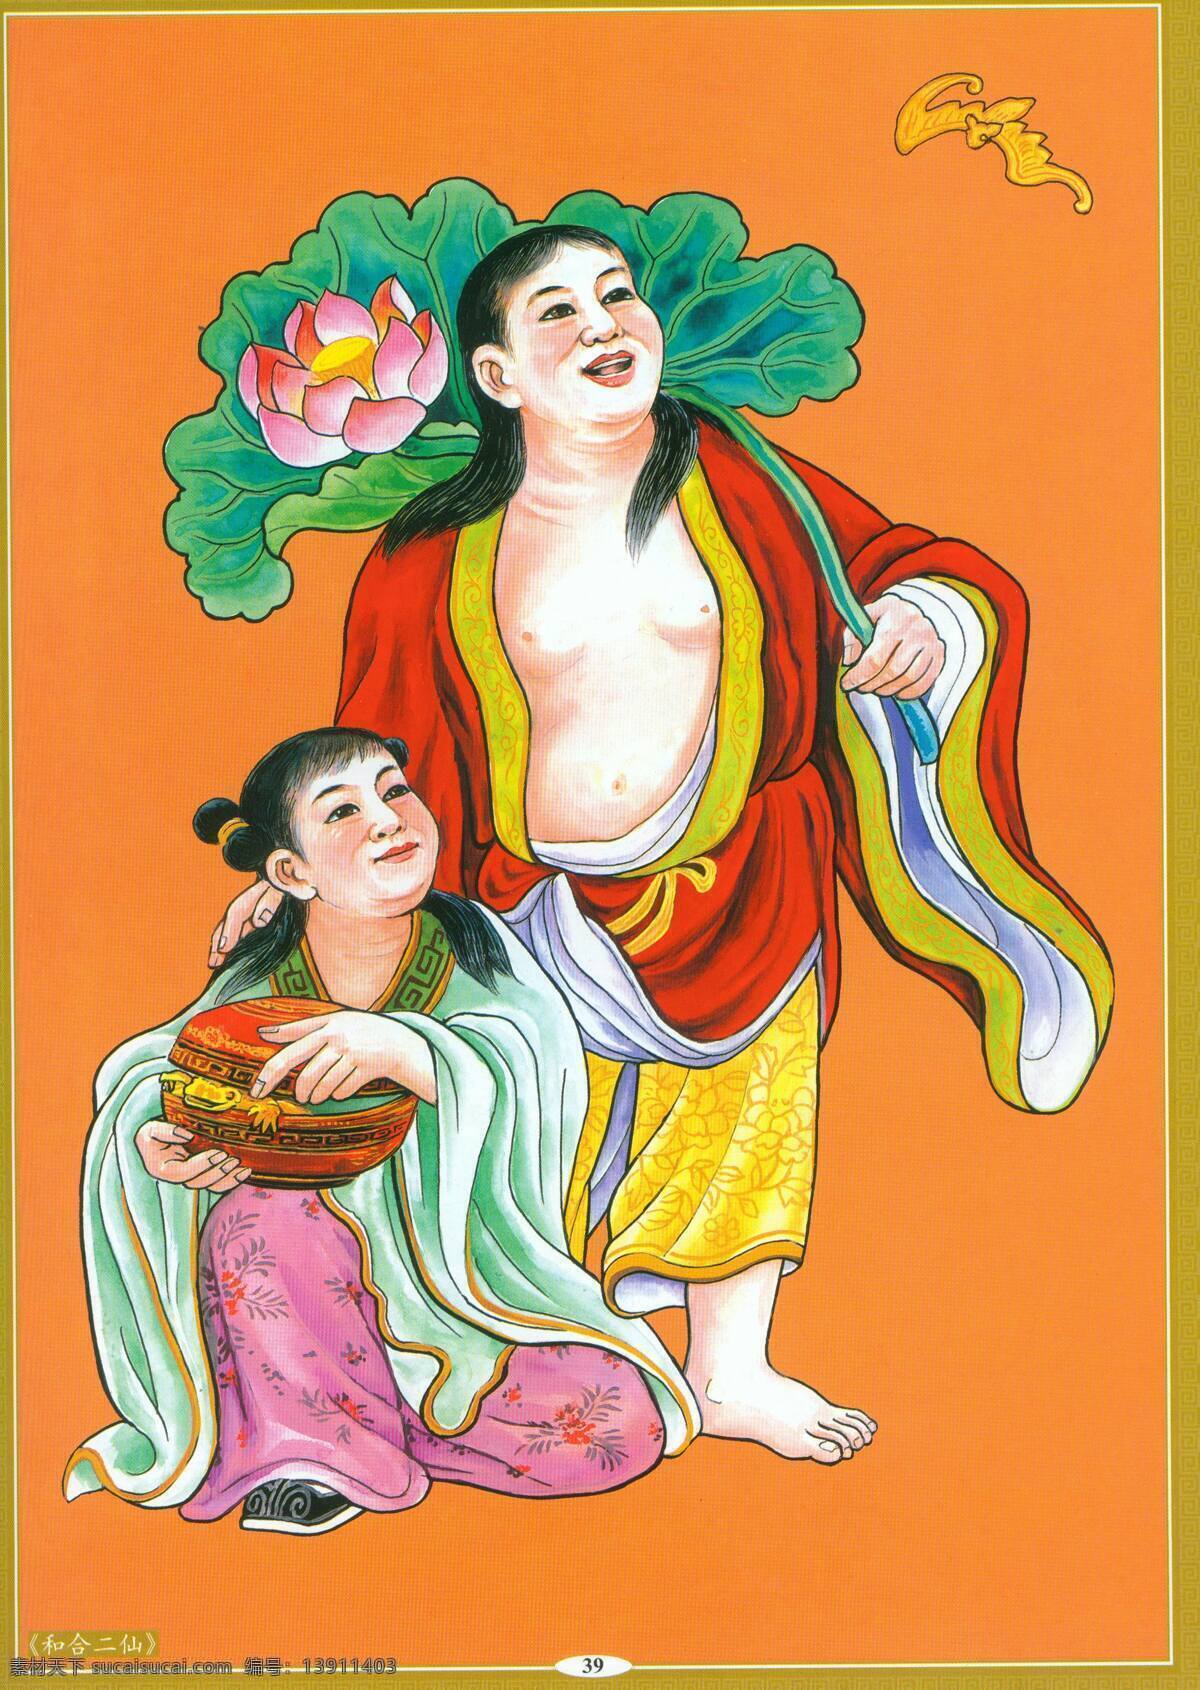 和合二仙 设计素材 神仙佛像 中国画篇 书画美术 橙色